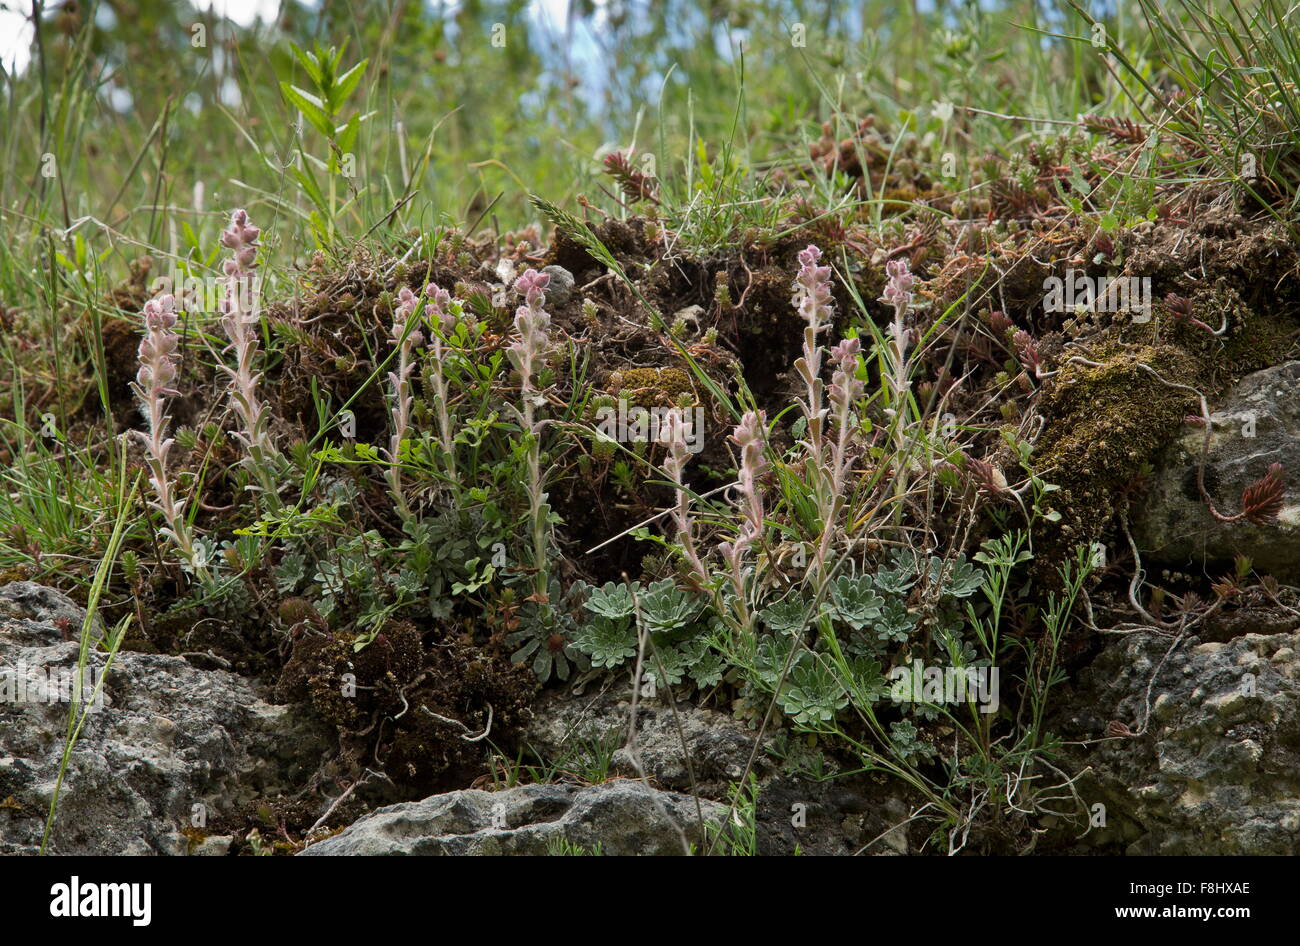 Engleria, Saxifrage Saxifraga porophylla sur rochers, endémique de l'Apennin, au Parc National des Abruzzes. Banque D'Images